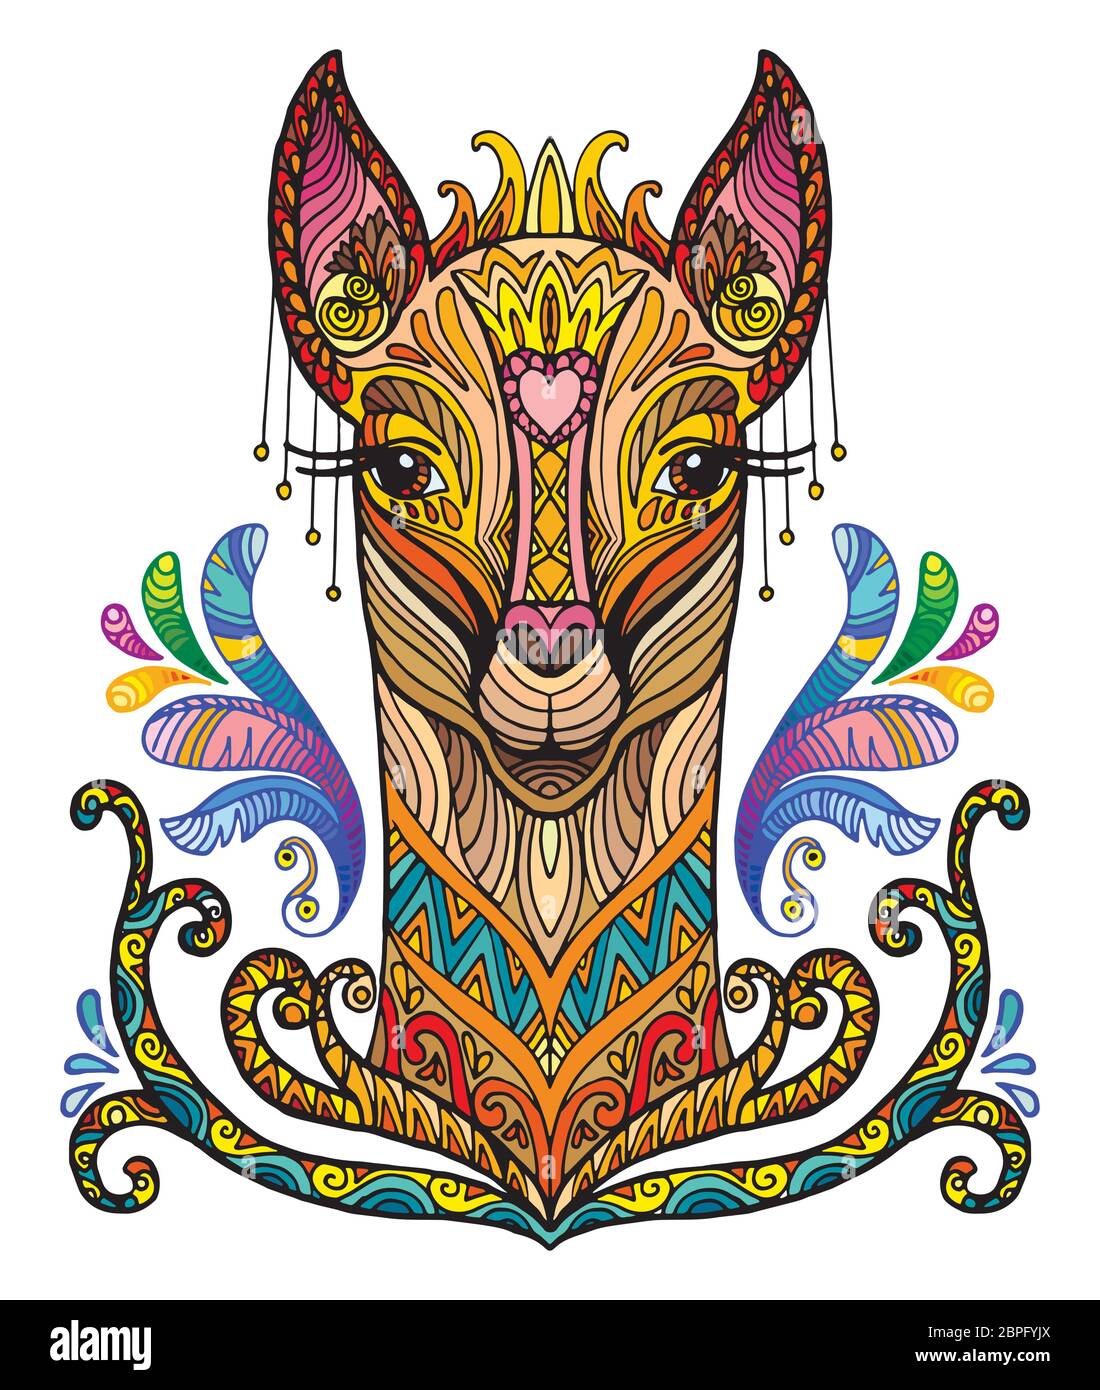 Vettore decorativo doodle testa ornamentale di lama. Astratto vettore colorato illustrazione della testa lama isolato su sfondo bianco. Illustrazione del magazzino Illustrazione Vettoriale